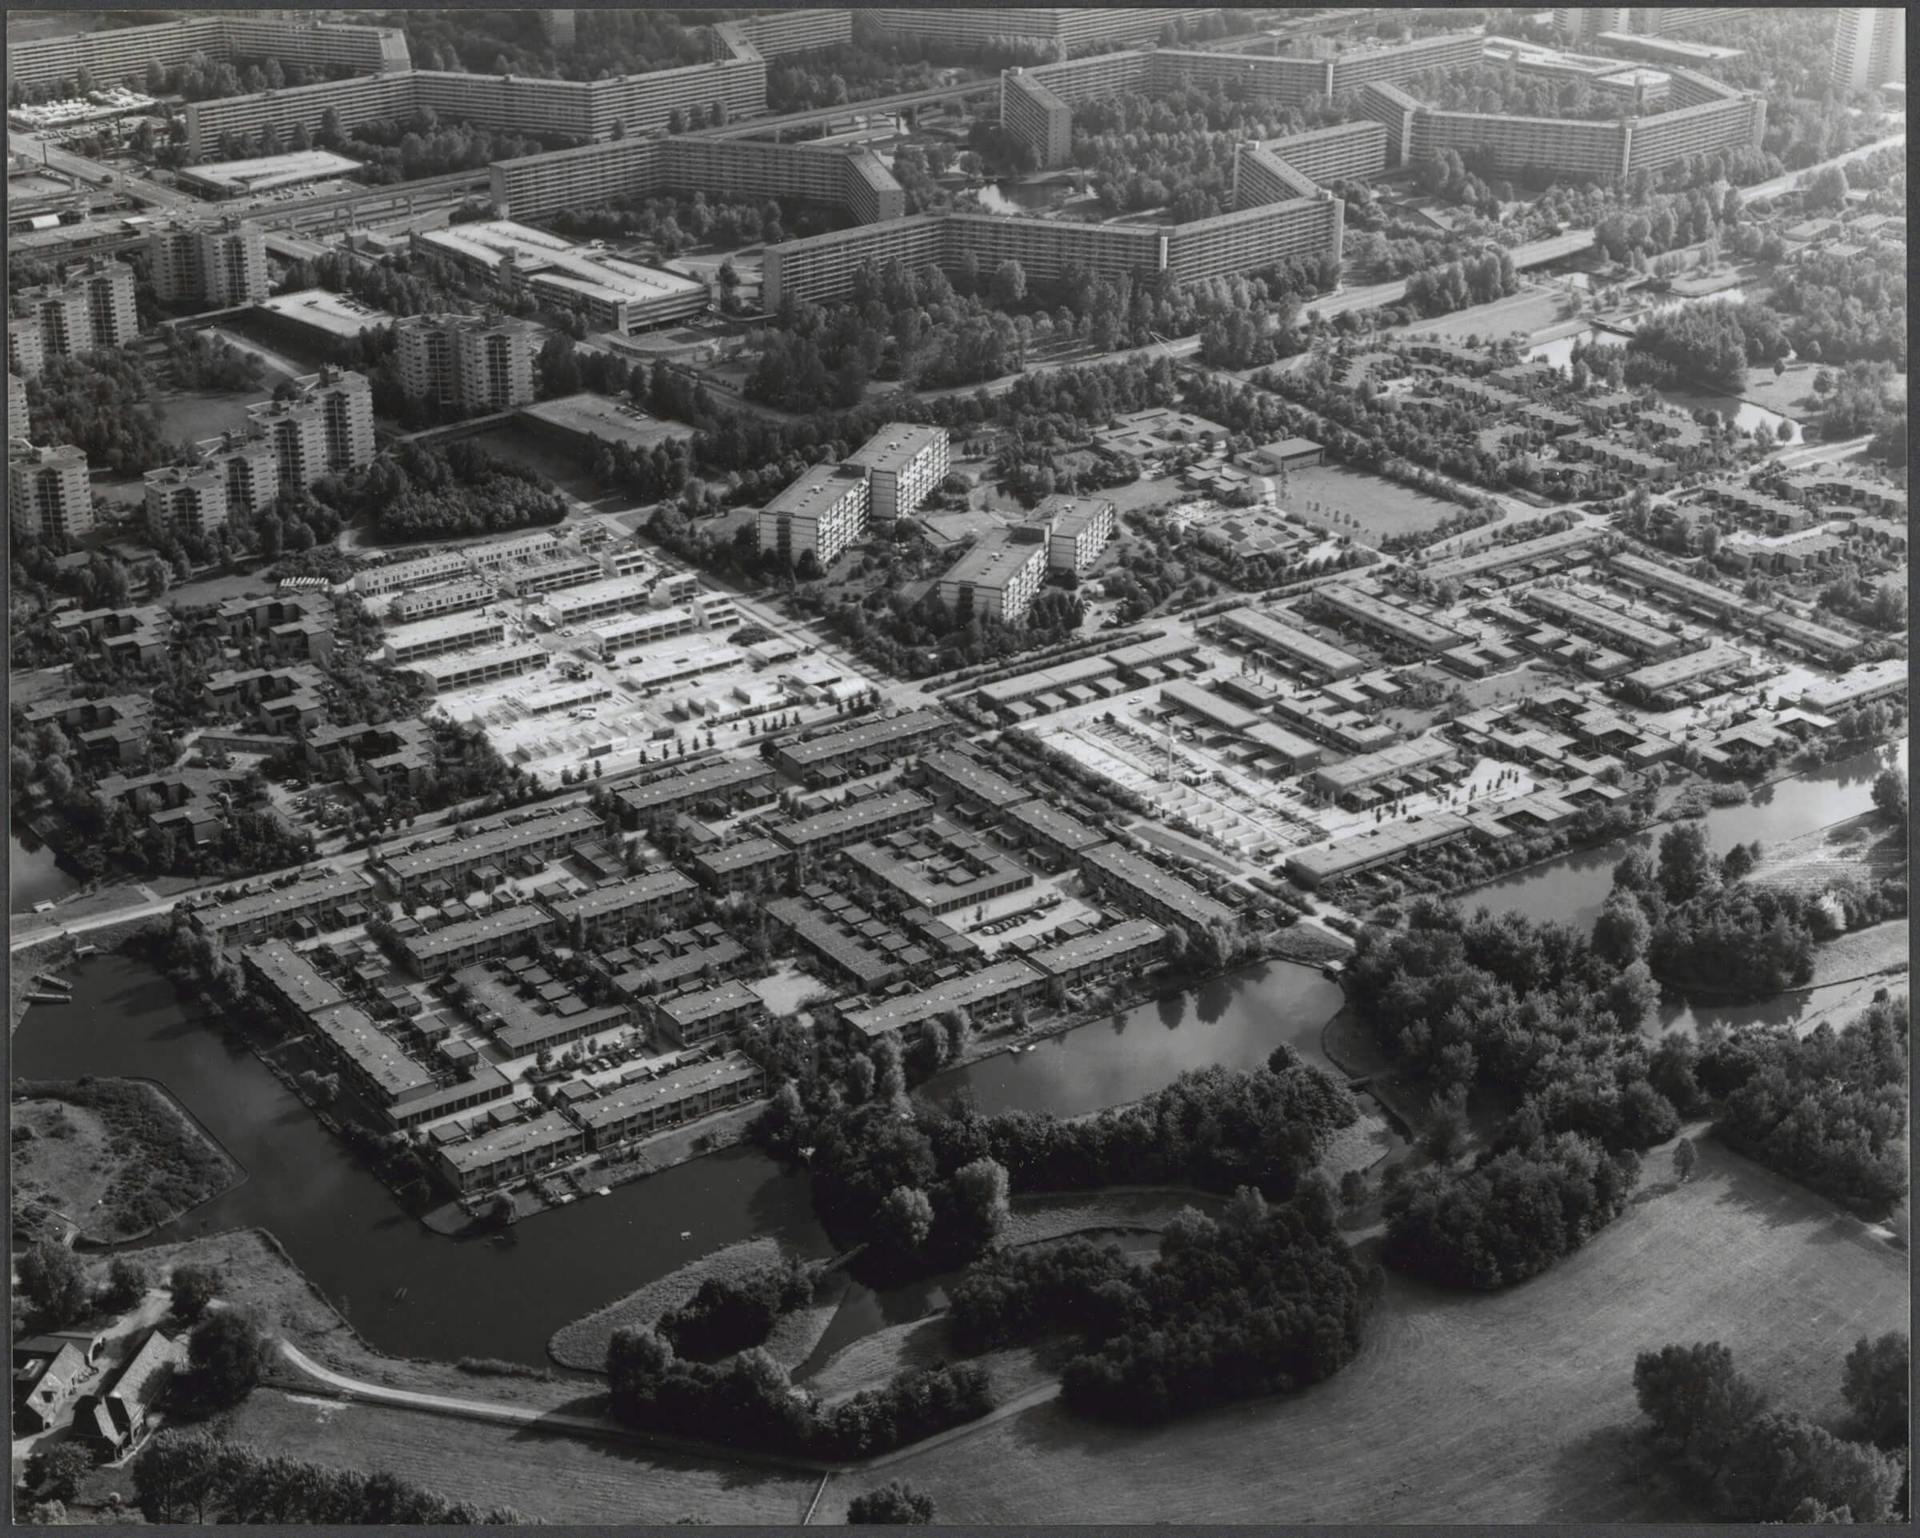 Siegried Nassuth, Aerial view of Bijlmer landscaping, Amsterdam, undated. Photographer unknown. Collection Het Nieuwe Instituut, Siegfried Nassuth archive. 